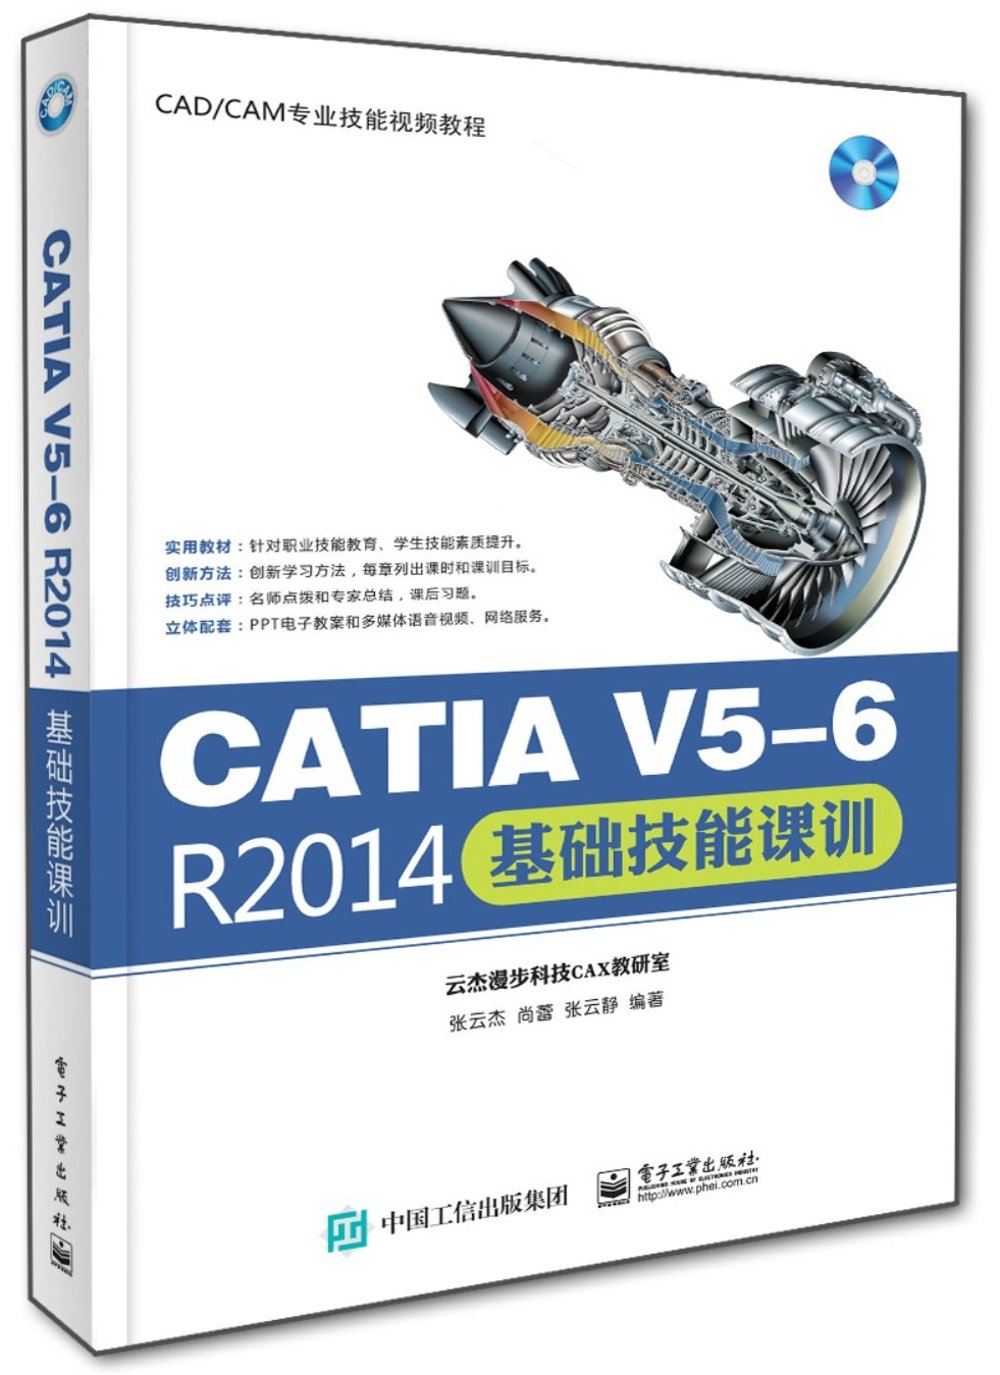 CATIA V5-6 R2014基礎技能課訓